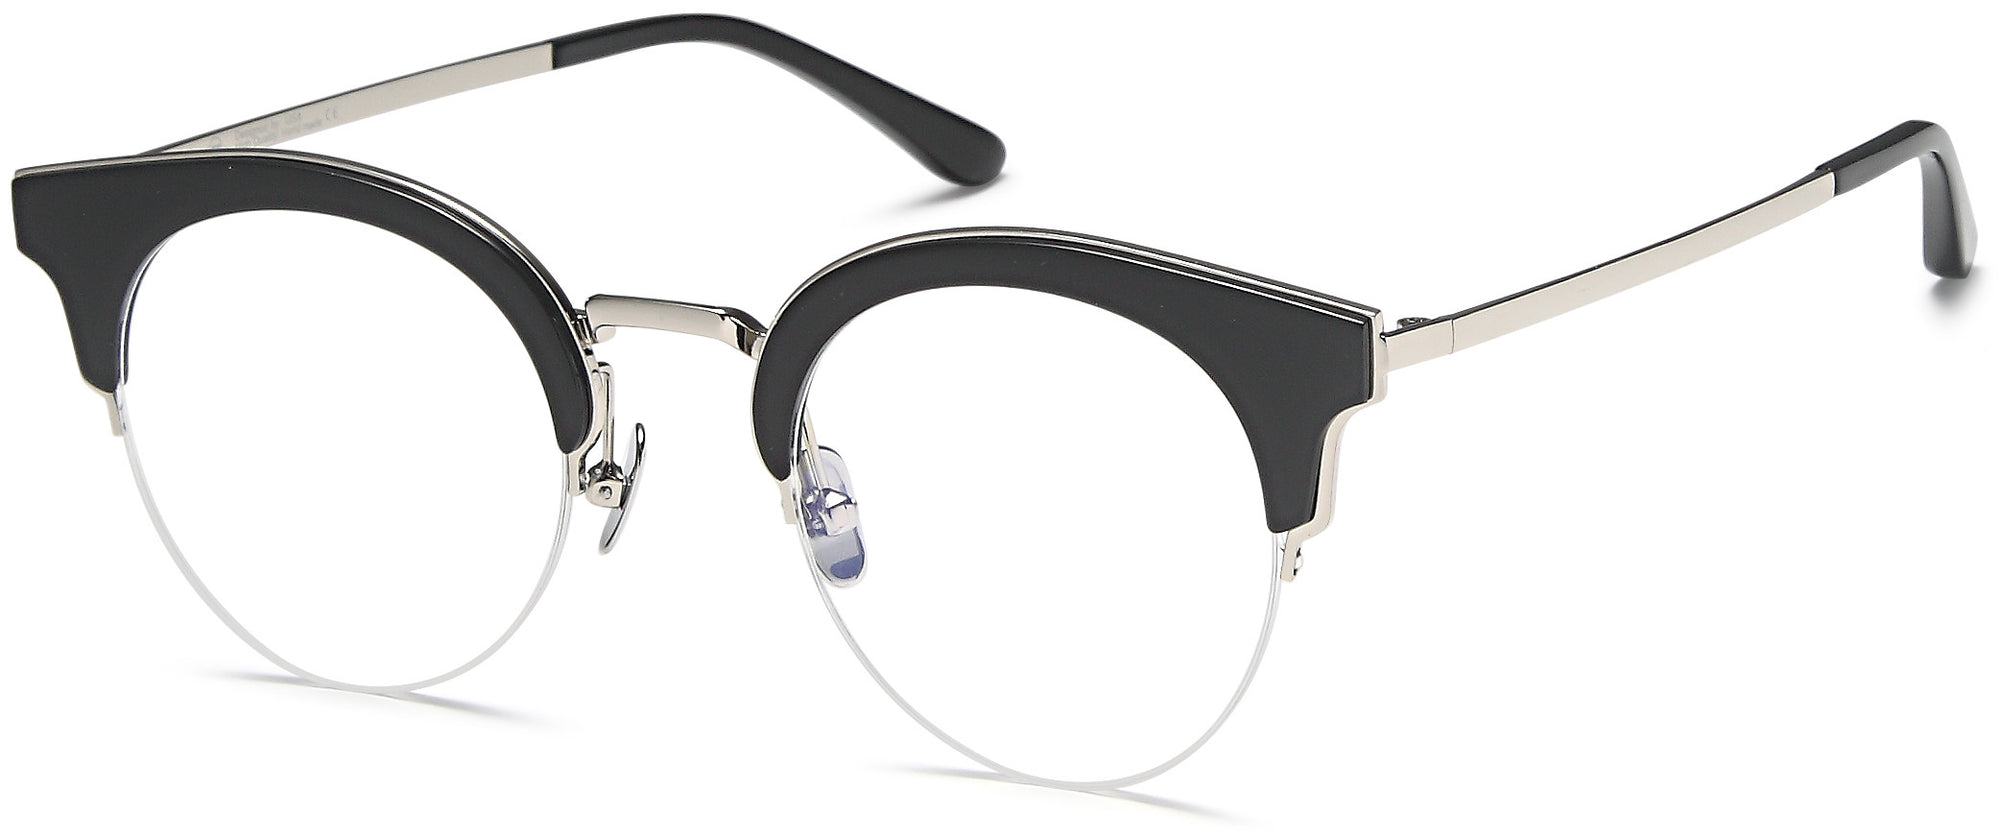 AGO Eyeglasses AGO1018 - Go-Readers.com